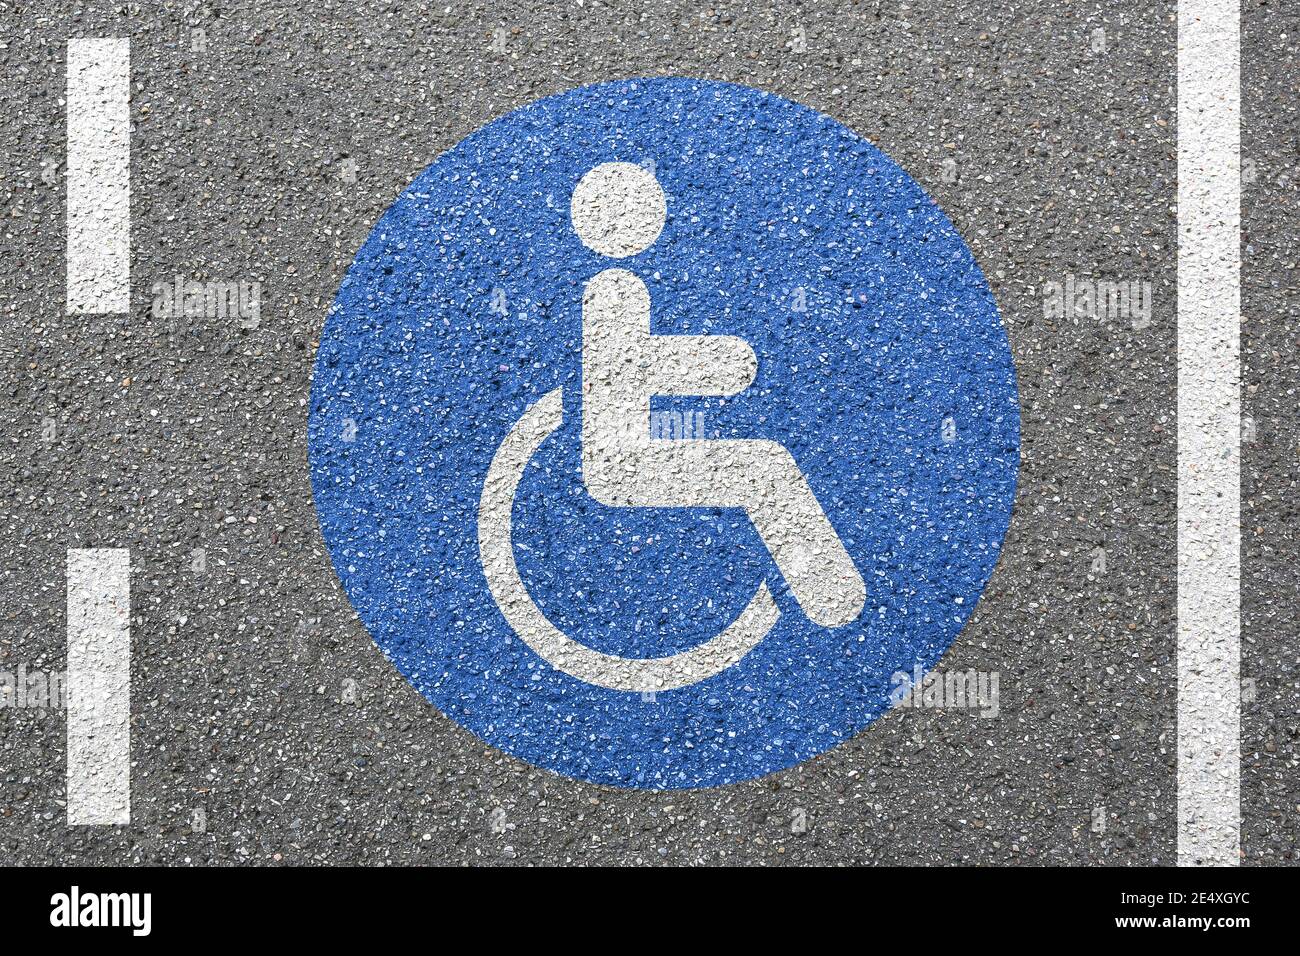 Cartello stradale su sedia a rotelle per disabili segnale stradale rampa accesso ruota per disabili area della sedia Foto Stock